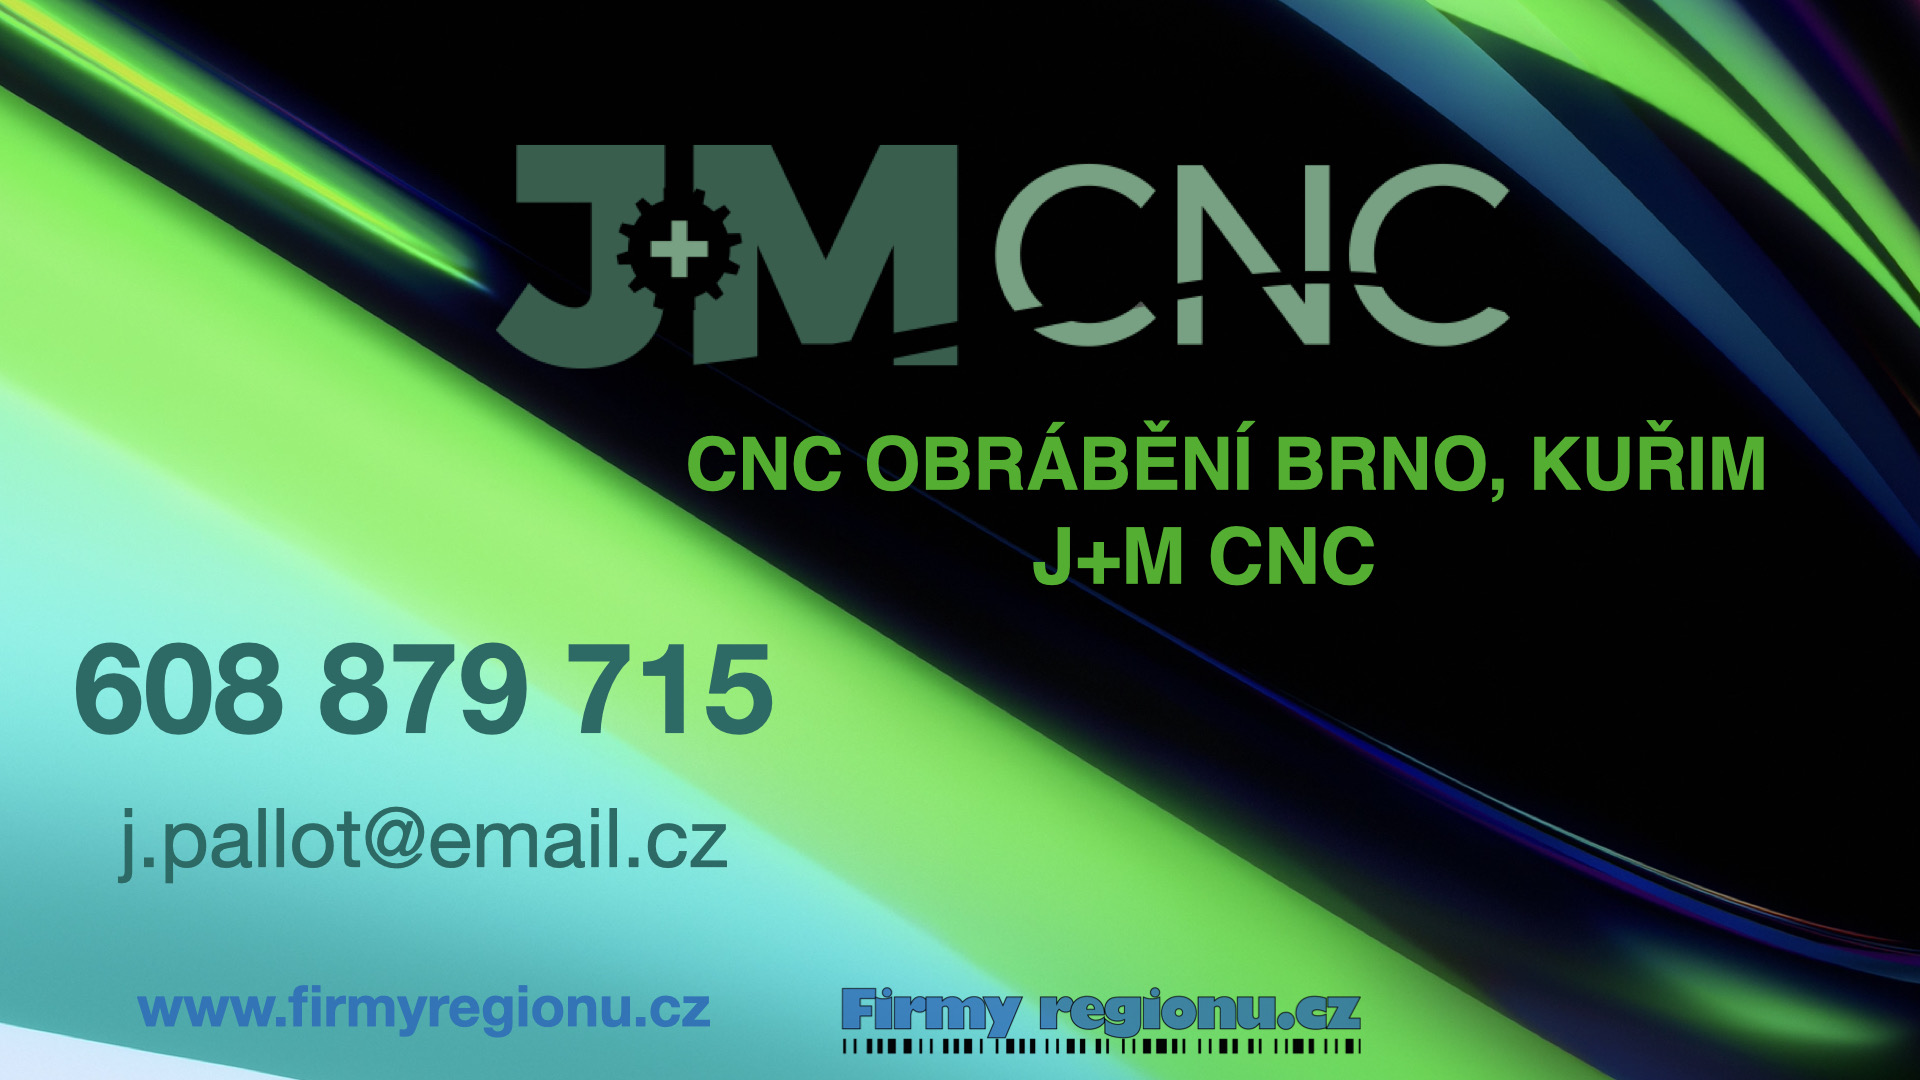 J+M CNC